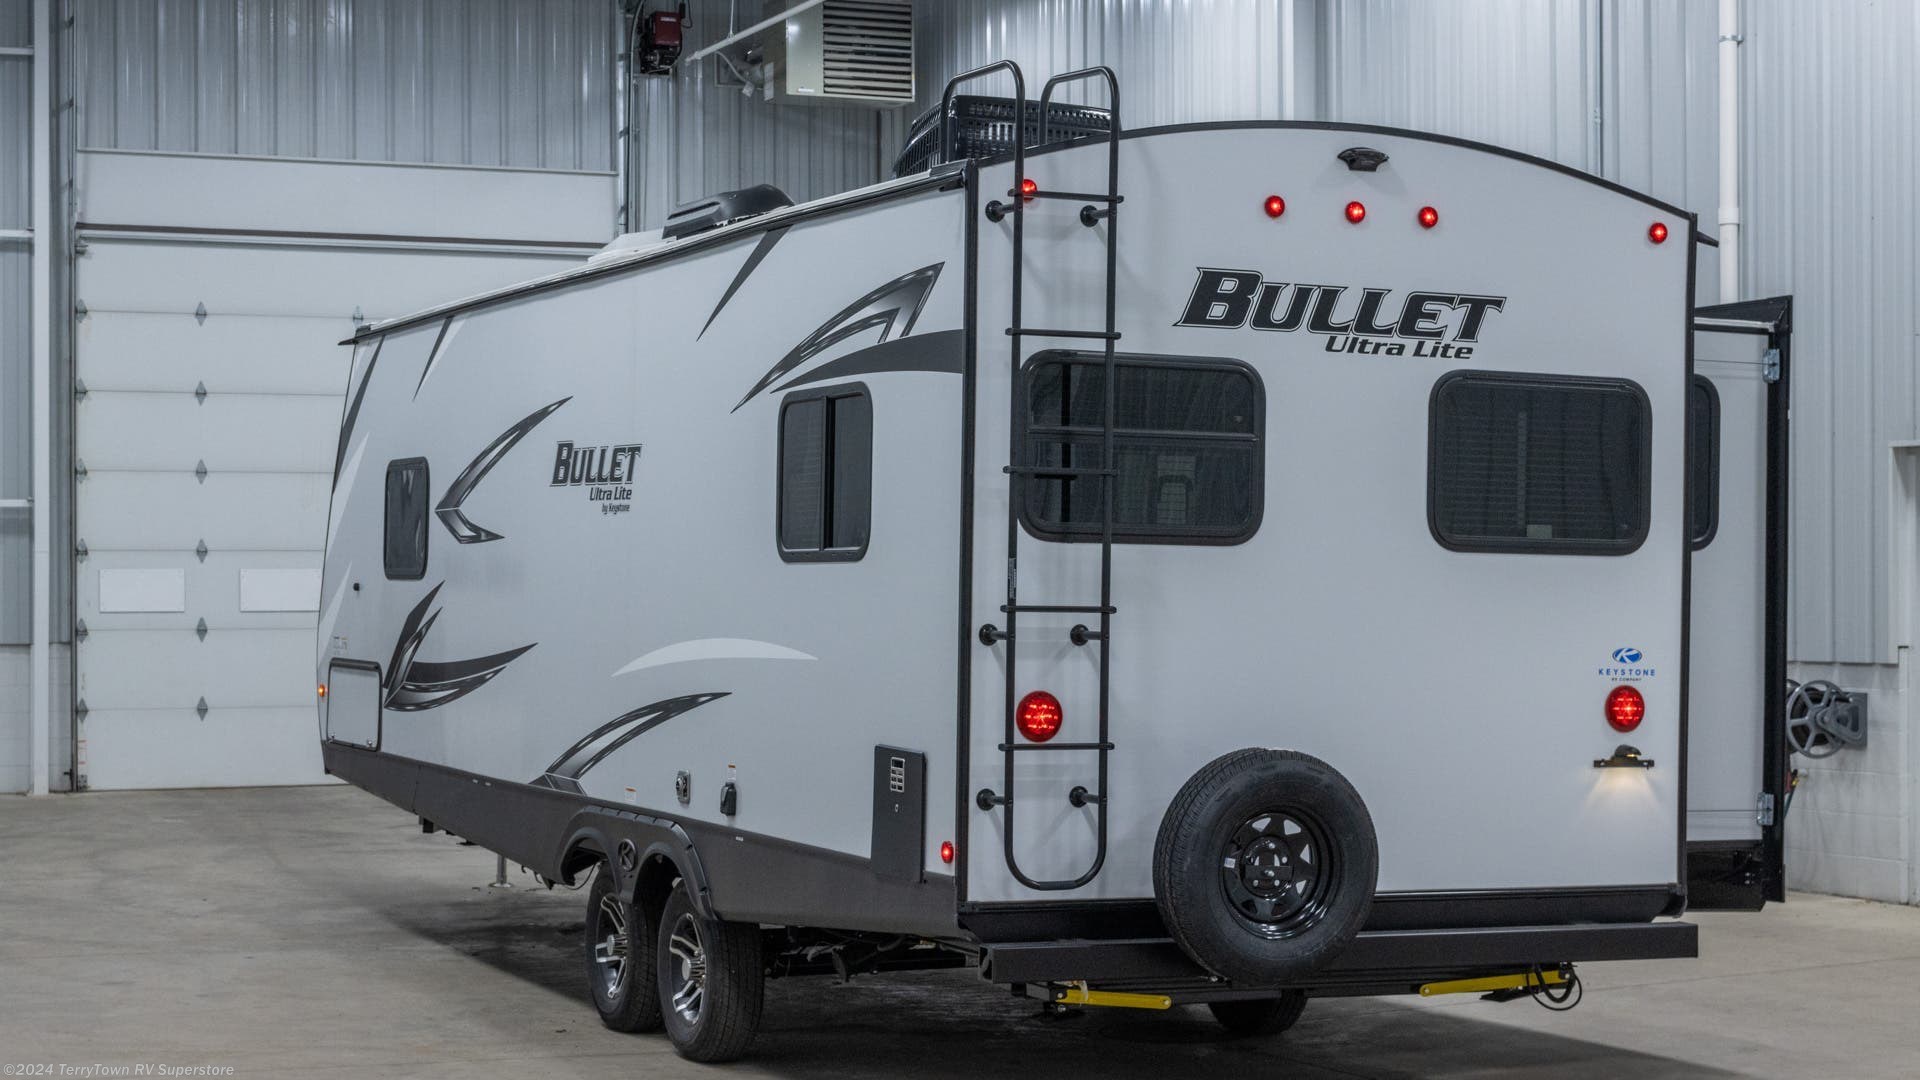 21 foot bullet travel trailer